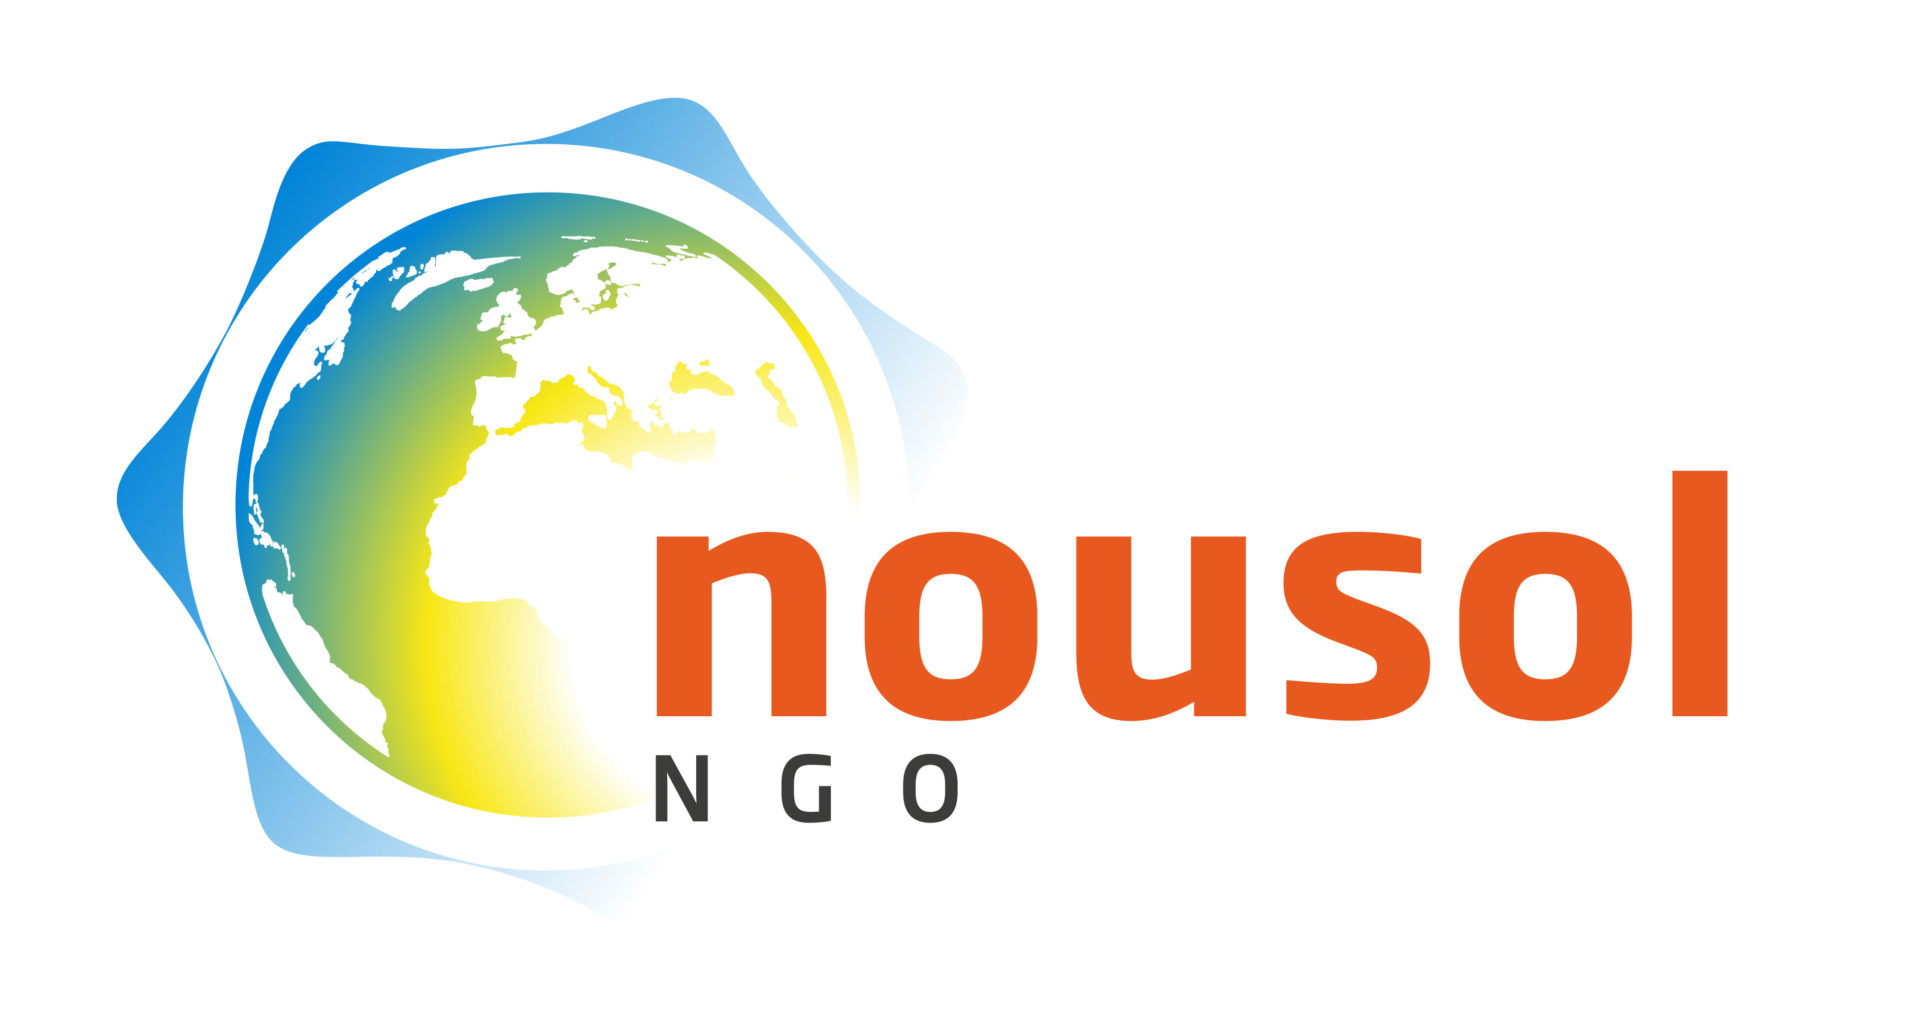 Nousol NGO